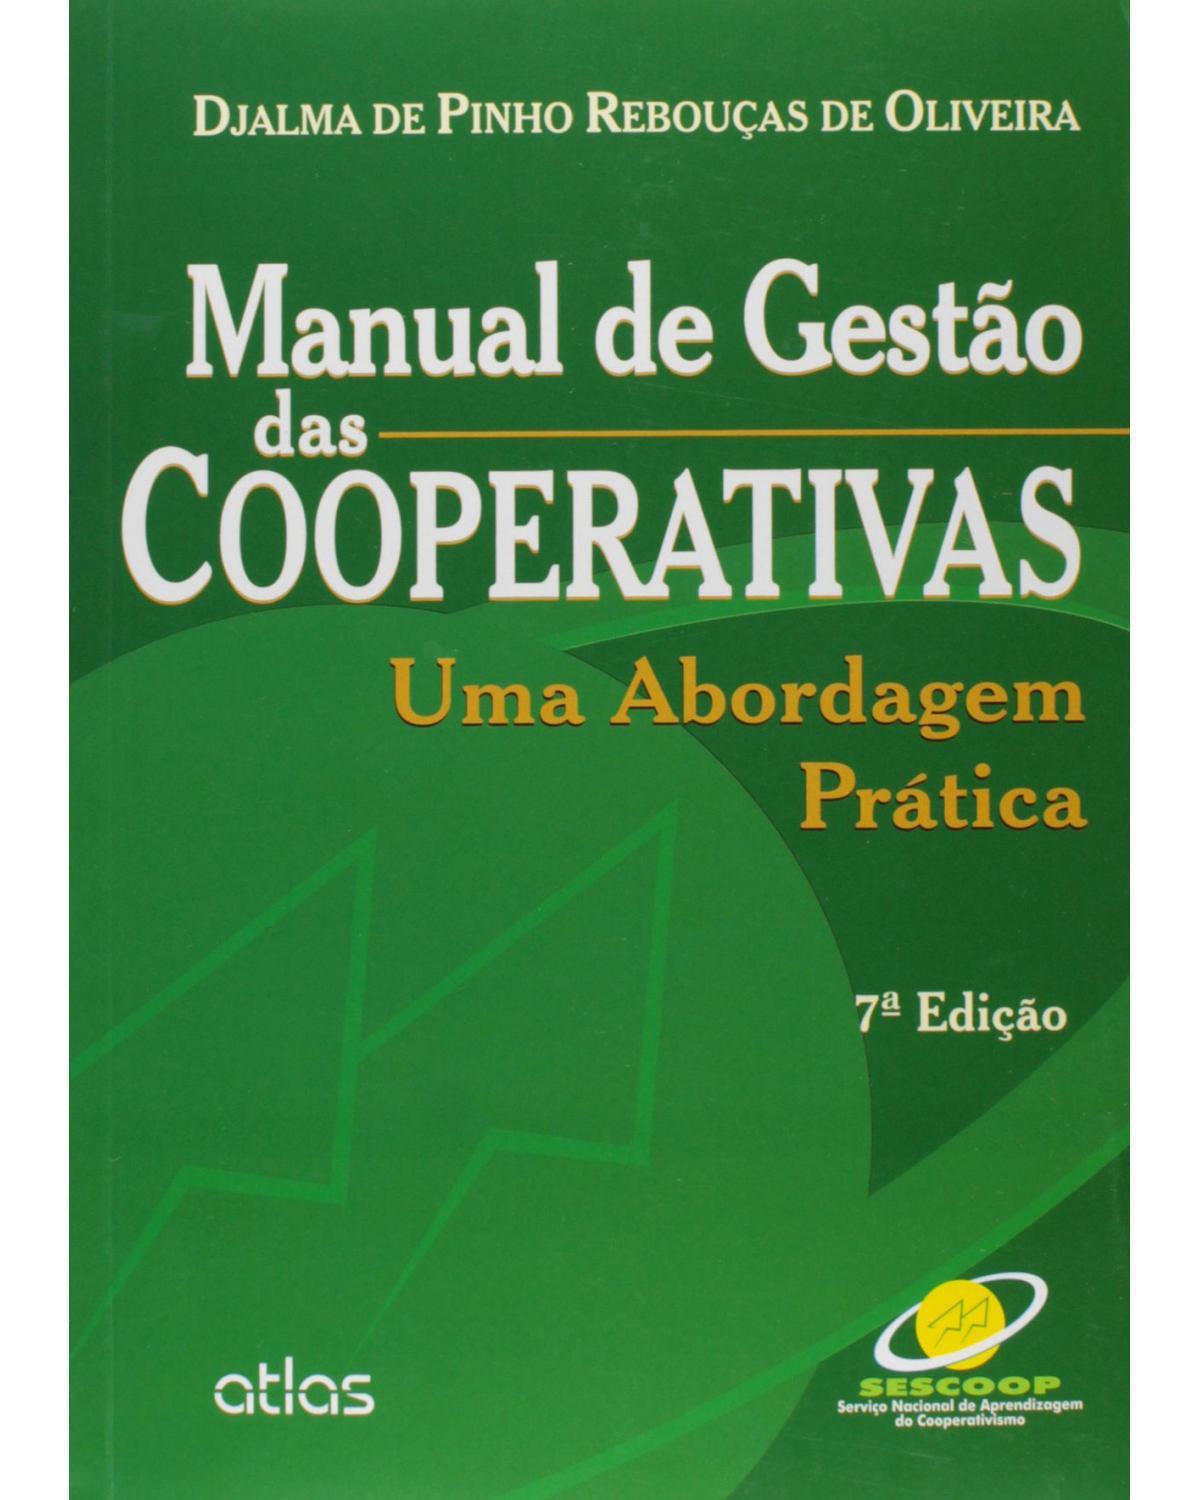 Manual de gestão das cooperativas - Uma abordagem prática - 7ª Edição | 2015